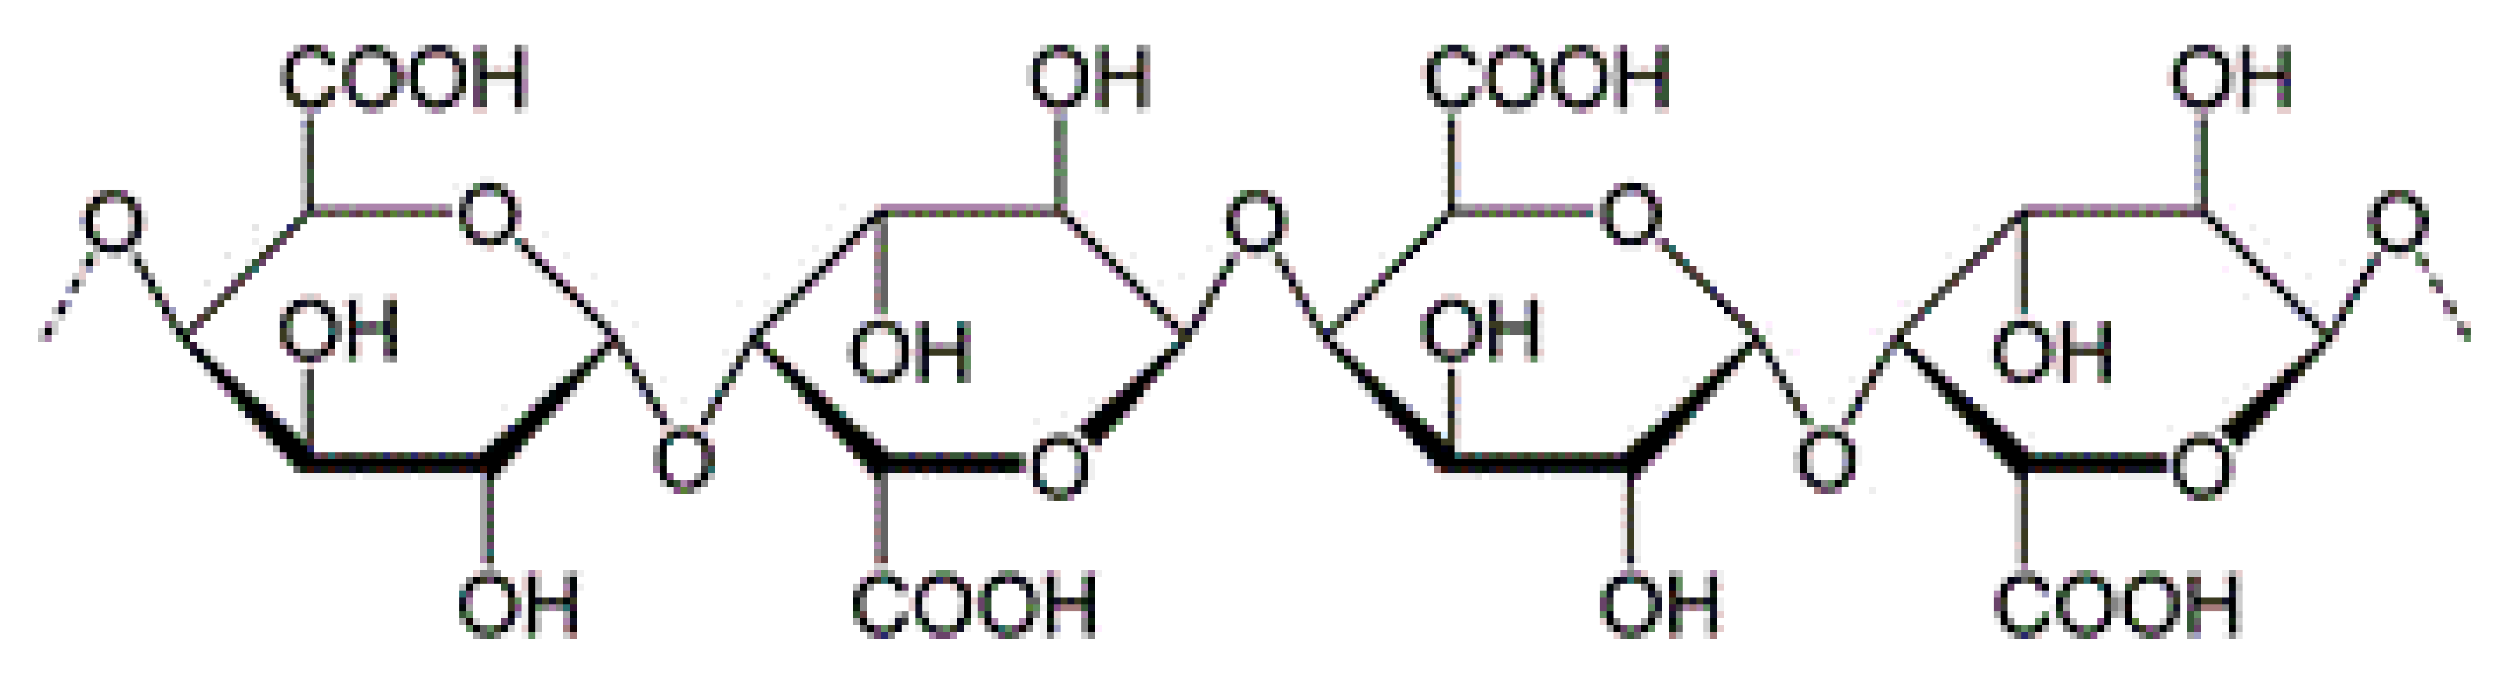 Пектин формула химическая